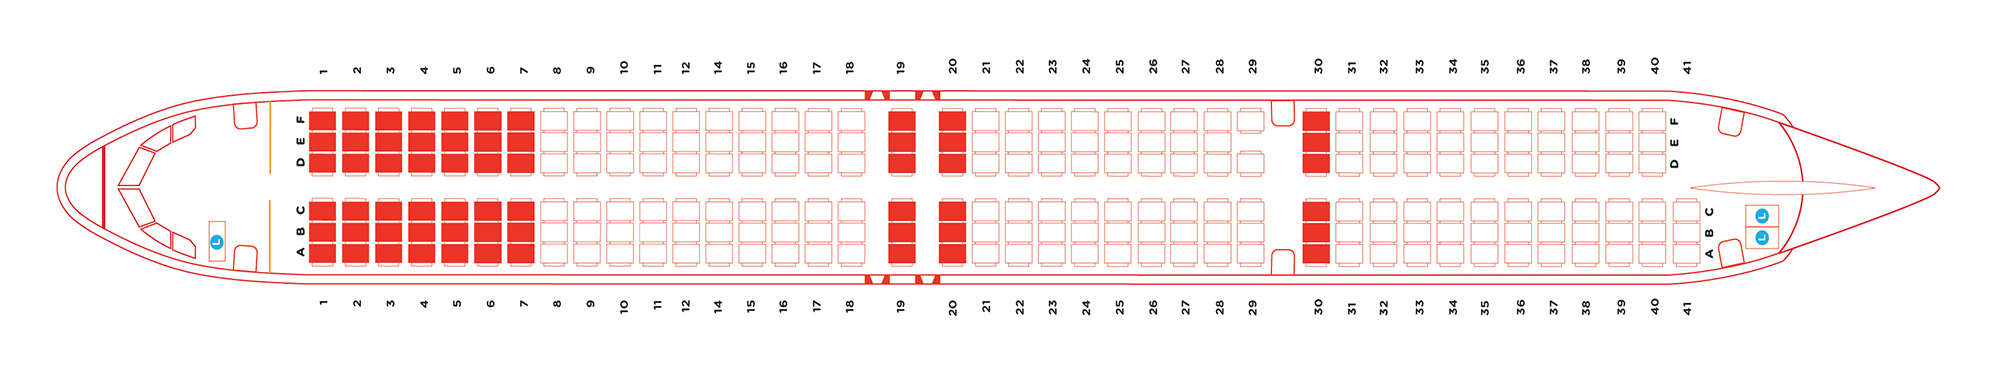 Аэробус а321 схема мест в салоне аэрофлот